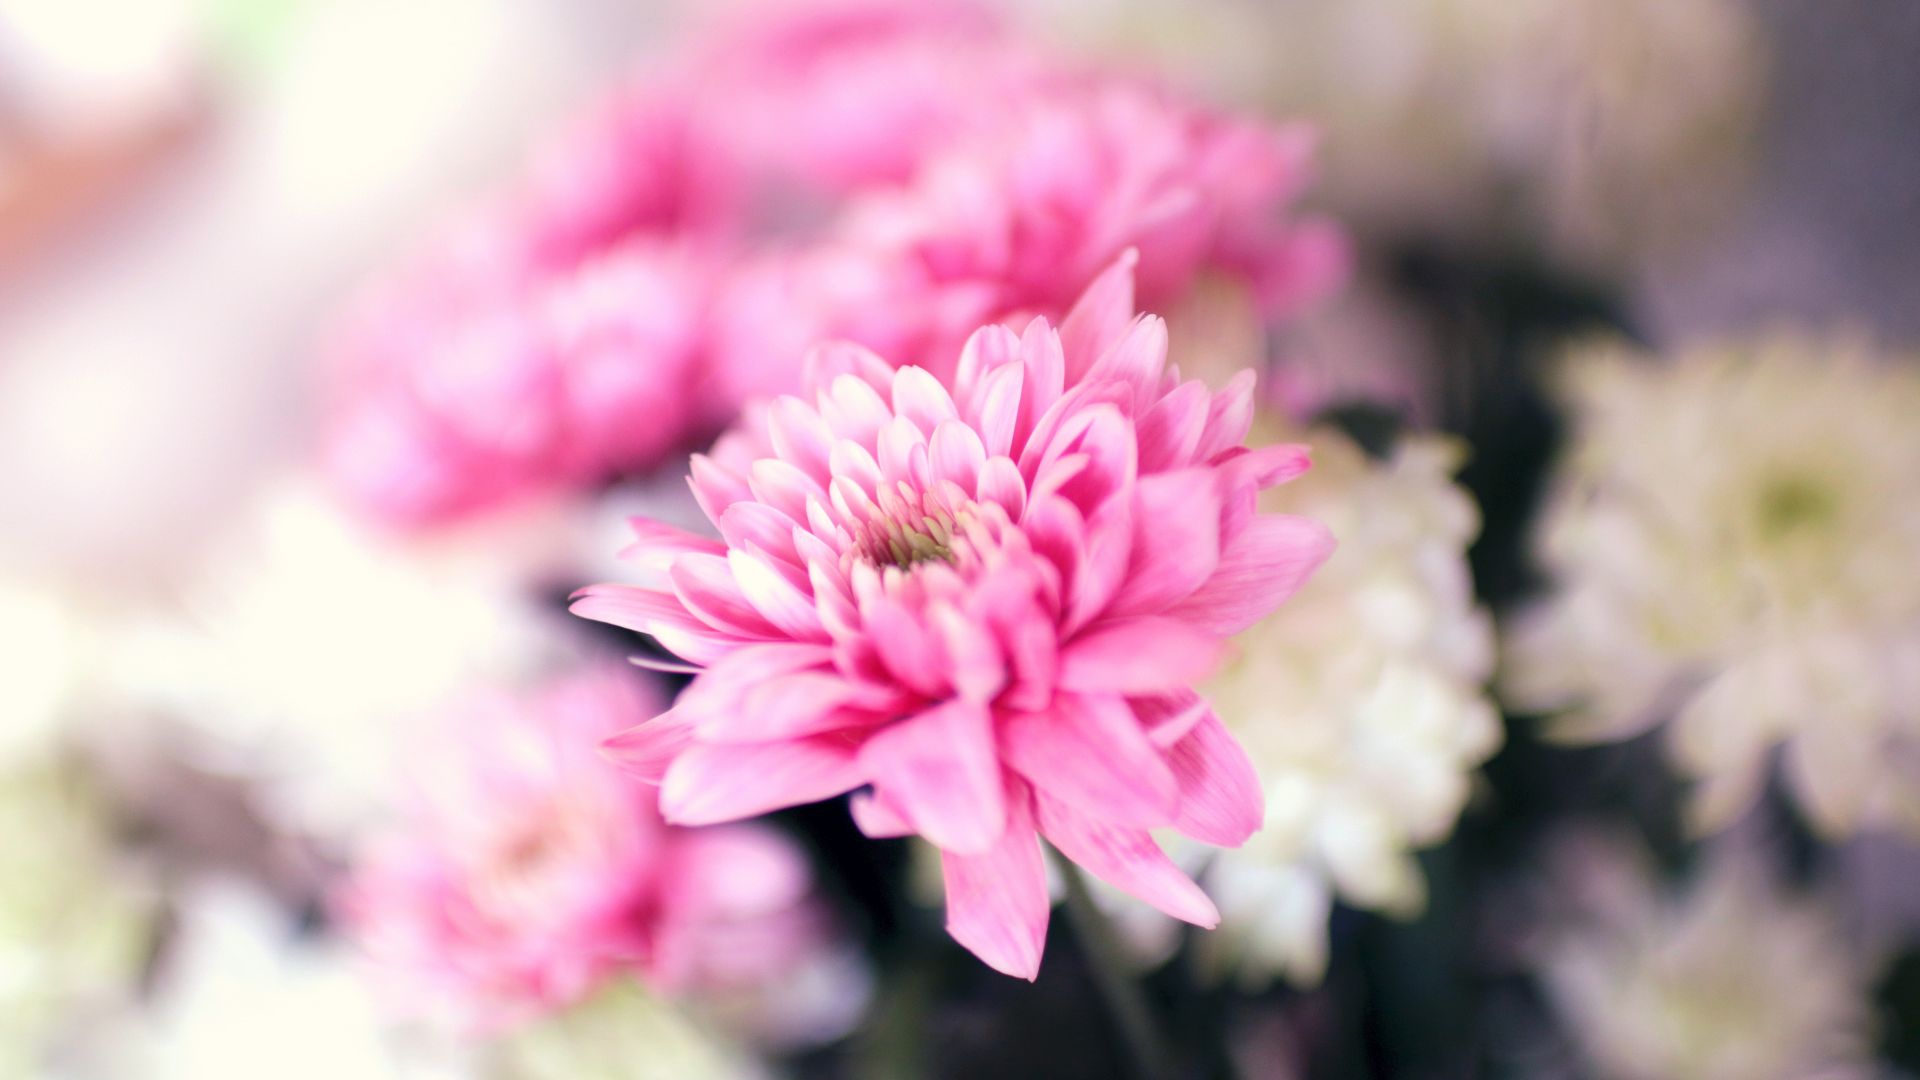 Цветы. 5k, 4k, 8k, лепестки, розовый, цветение, Flowers. 5k, 4k wallpaper, 8k, petals, pink, blossom (horizontal)